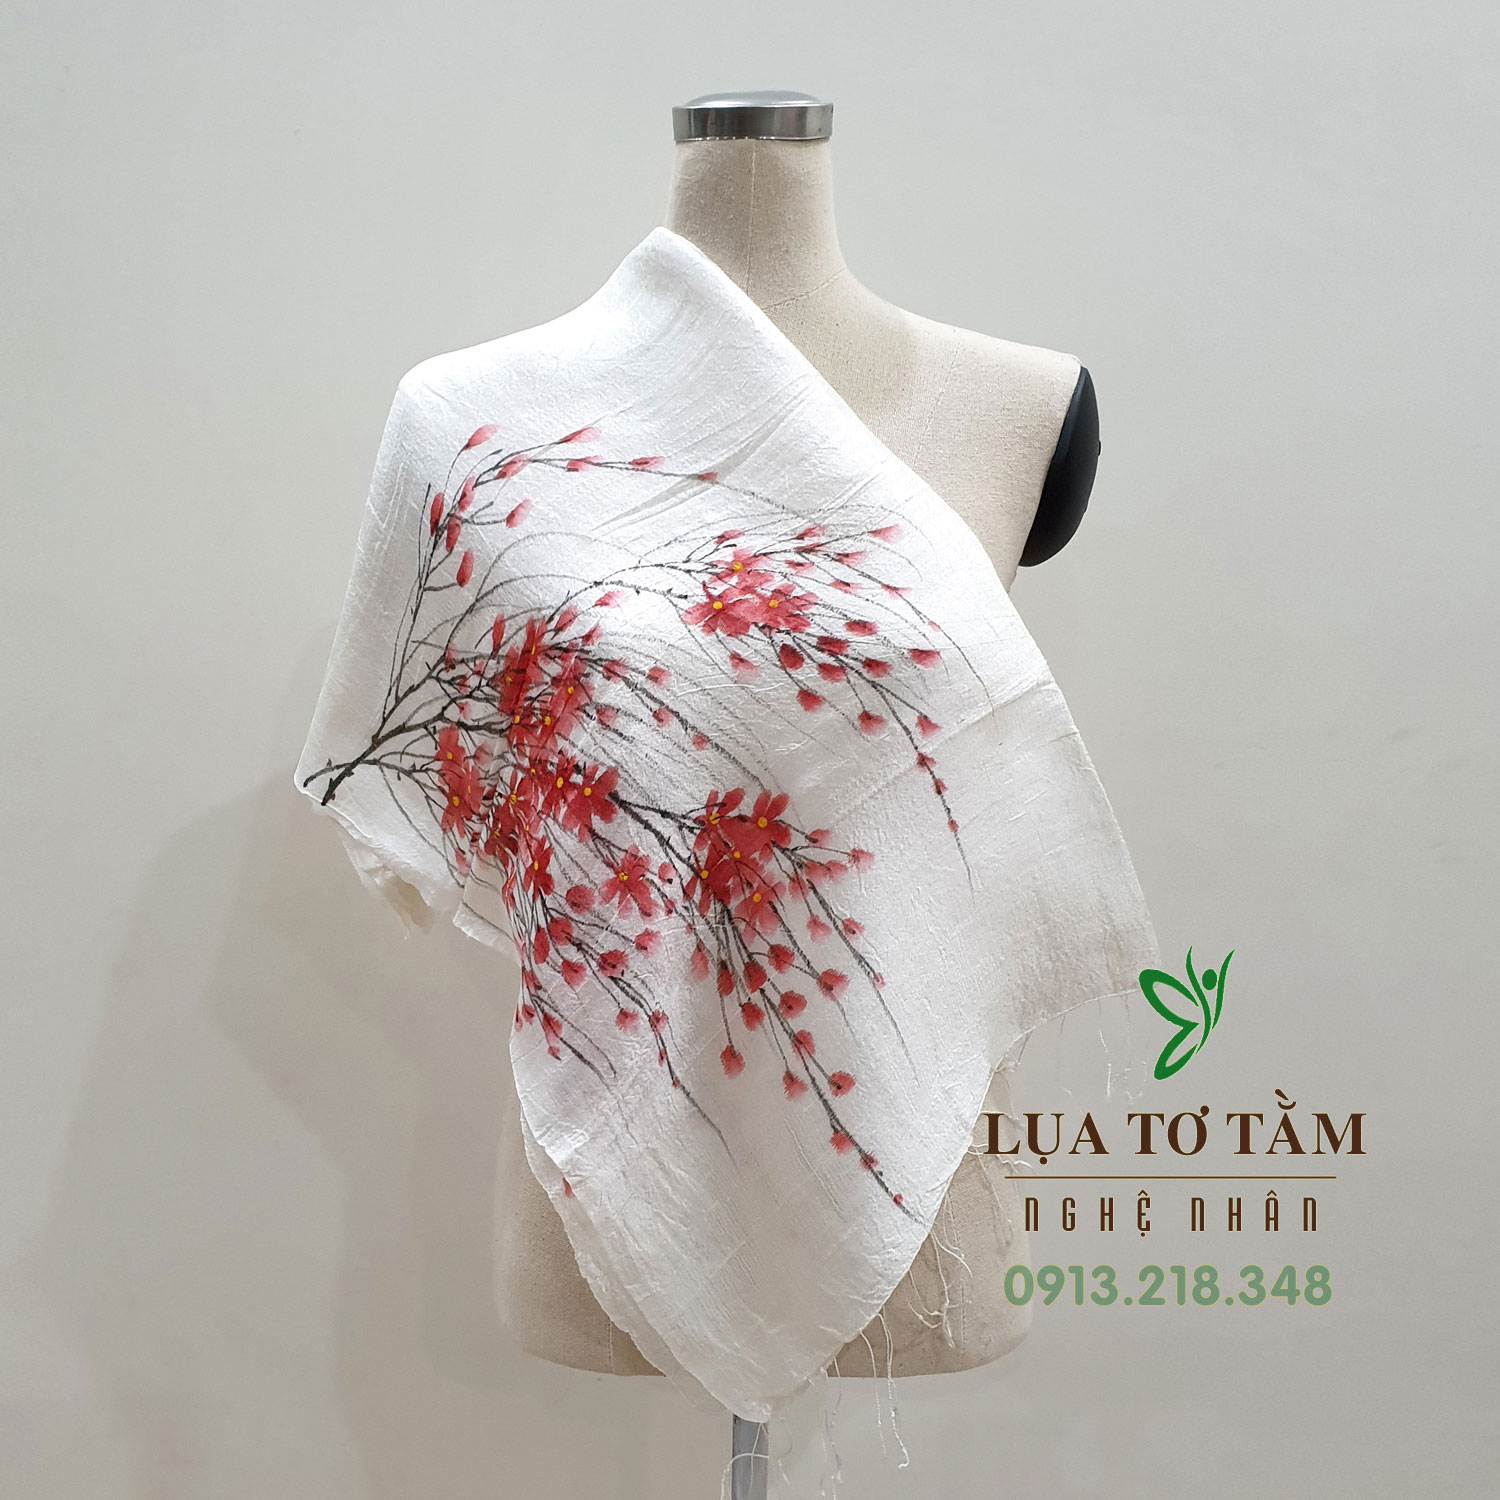 Khăn lụa tơ tằm Việt Nam chất liệu thiên nhiên với hình ảnh hoa đào tượng trưng cho mùa xuân miền Bắc đậm vẻ truyền thống.